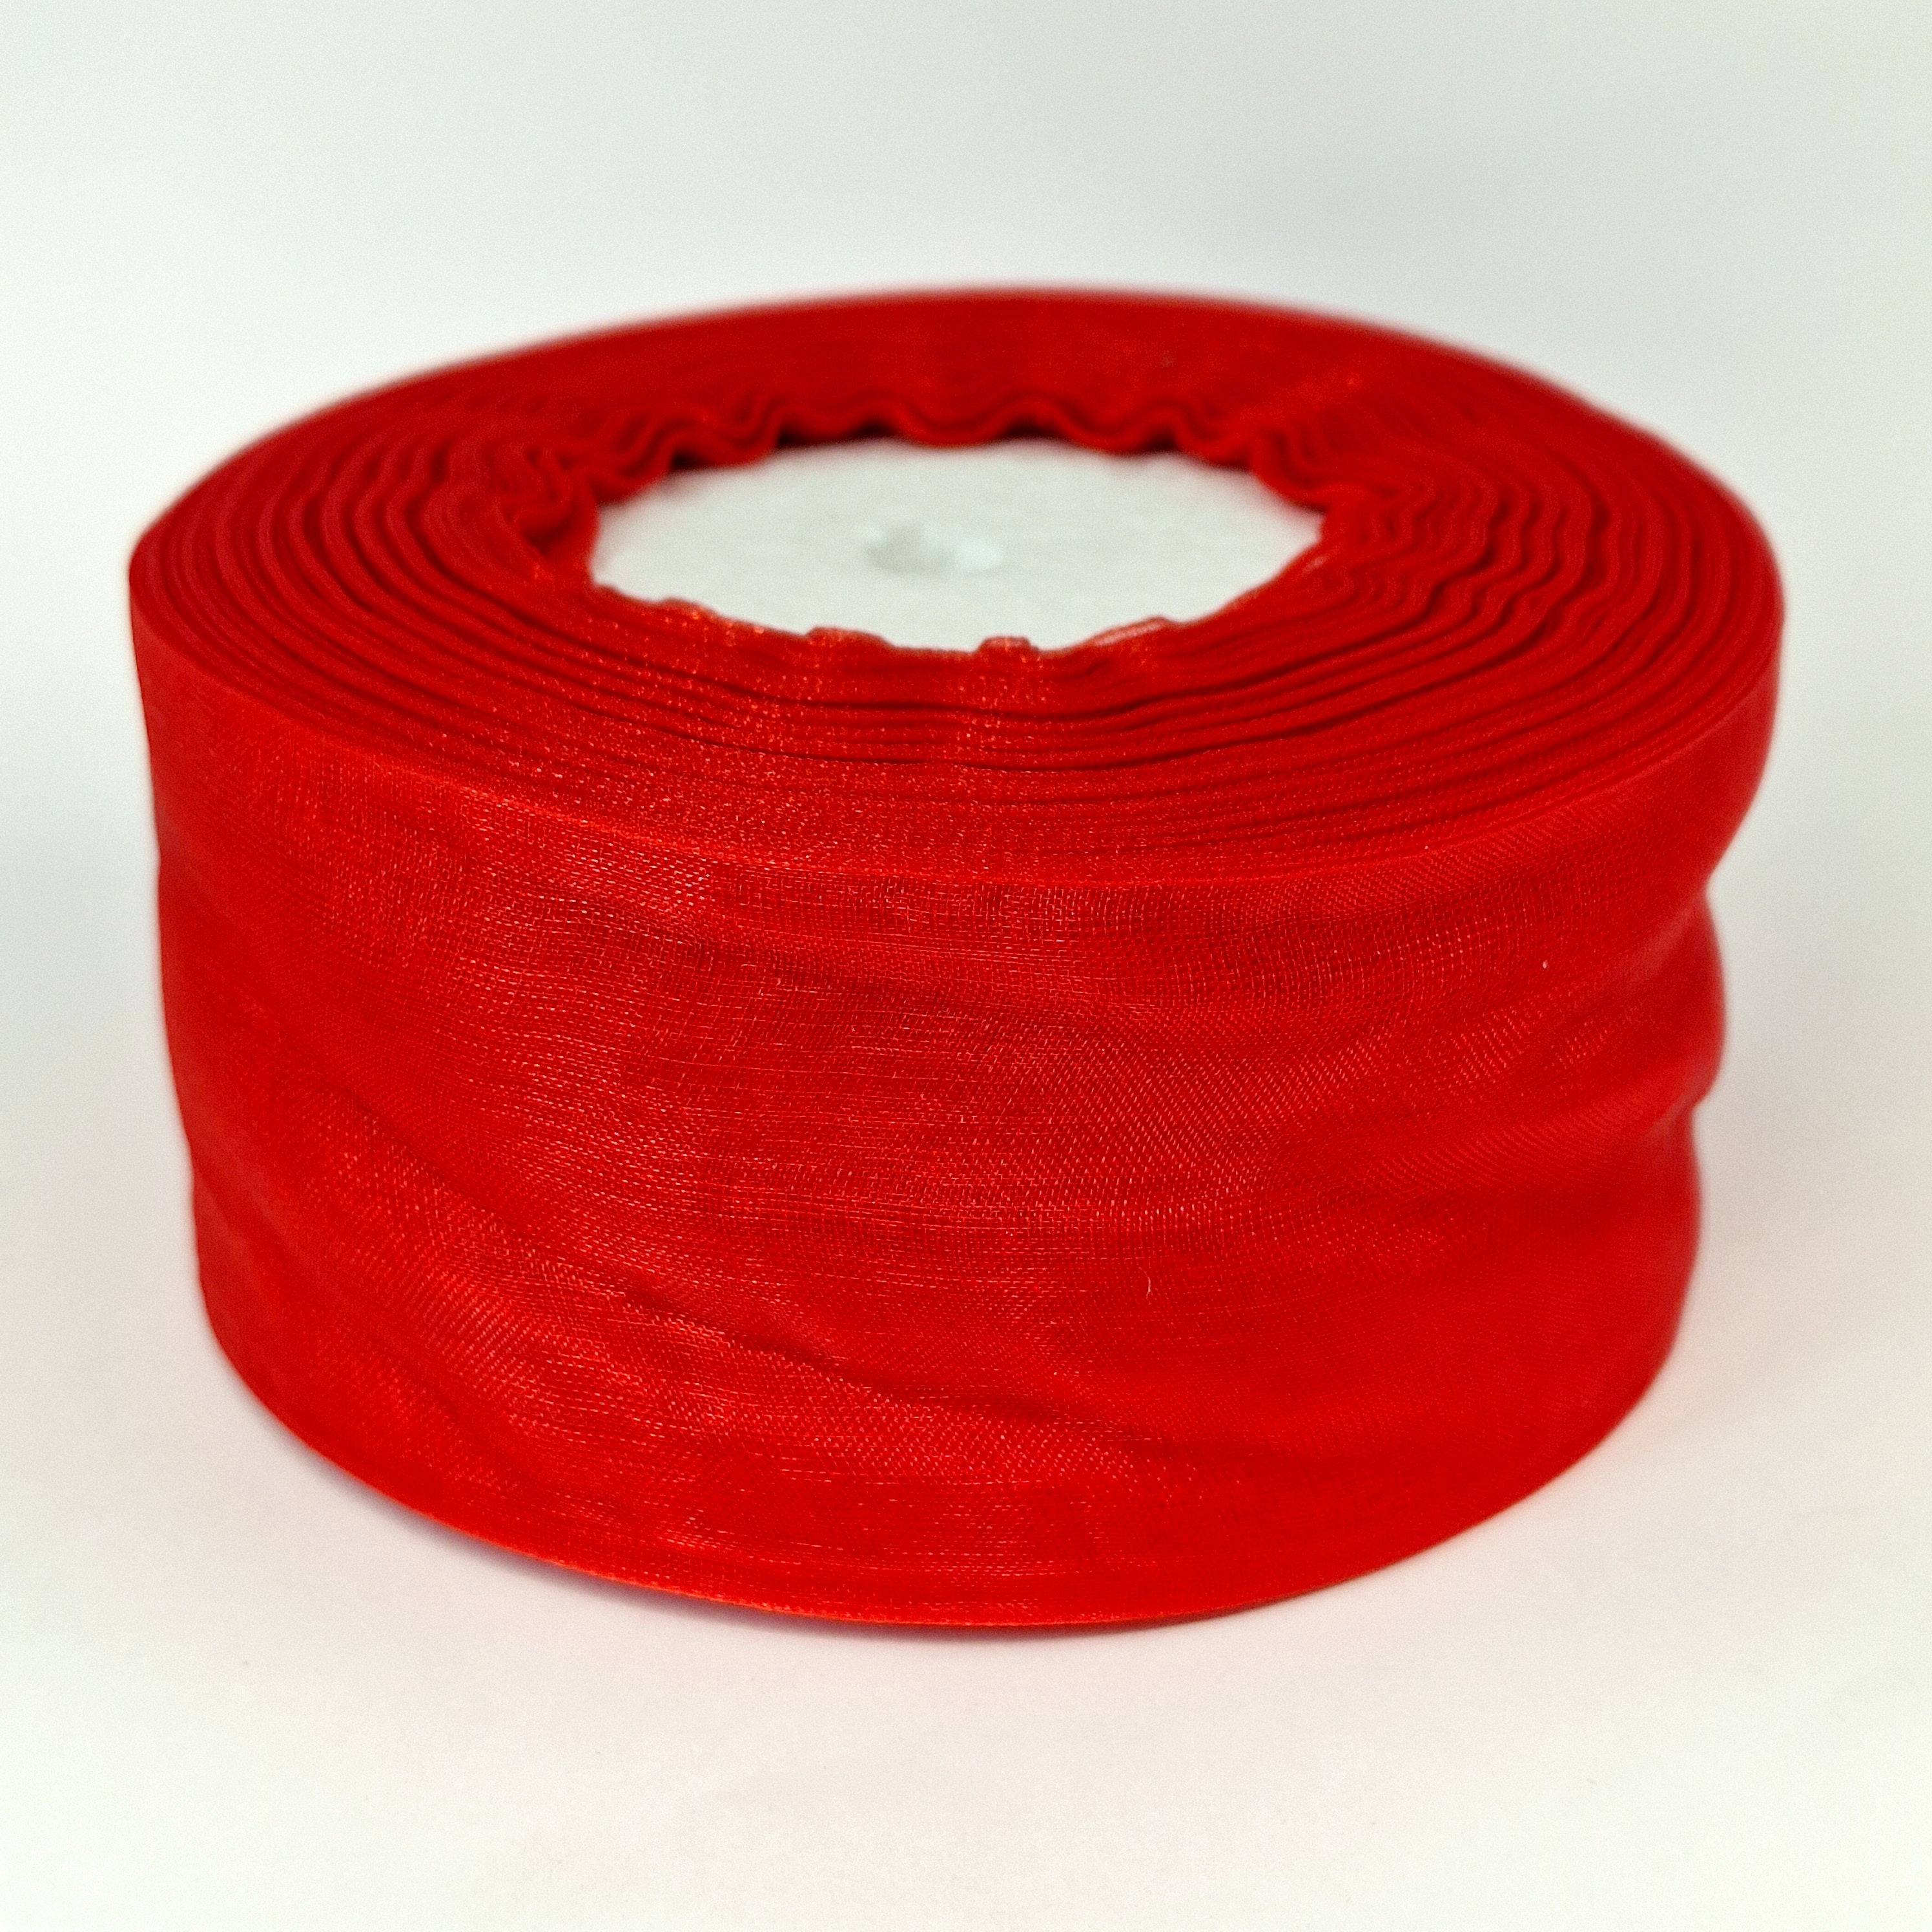 MajorCrafts 50mm 45metres Sheer Organza Fabric Ribbon Roll Red Shade R1026